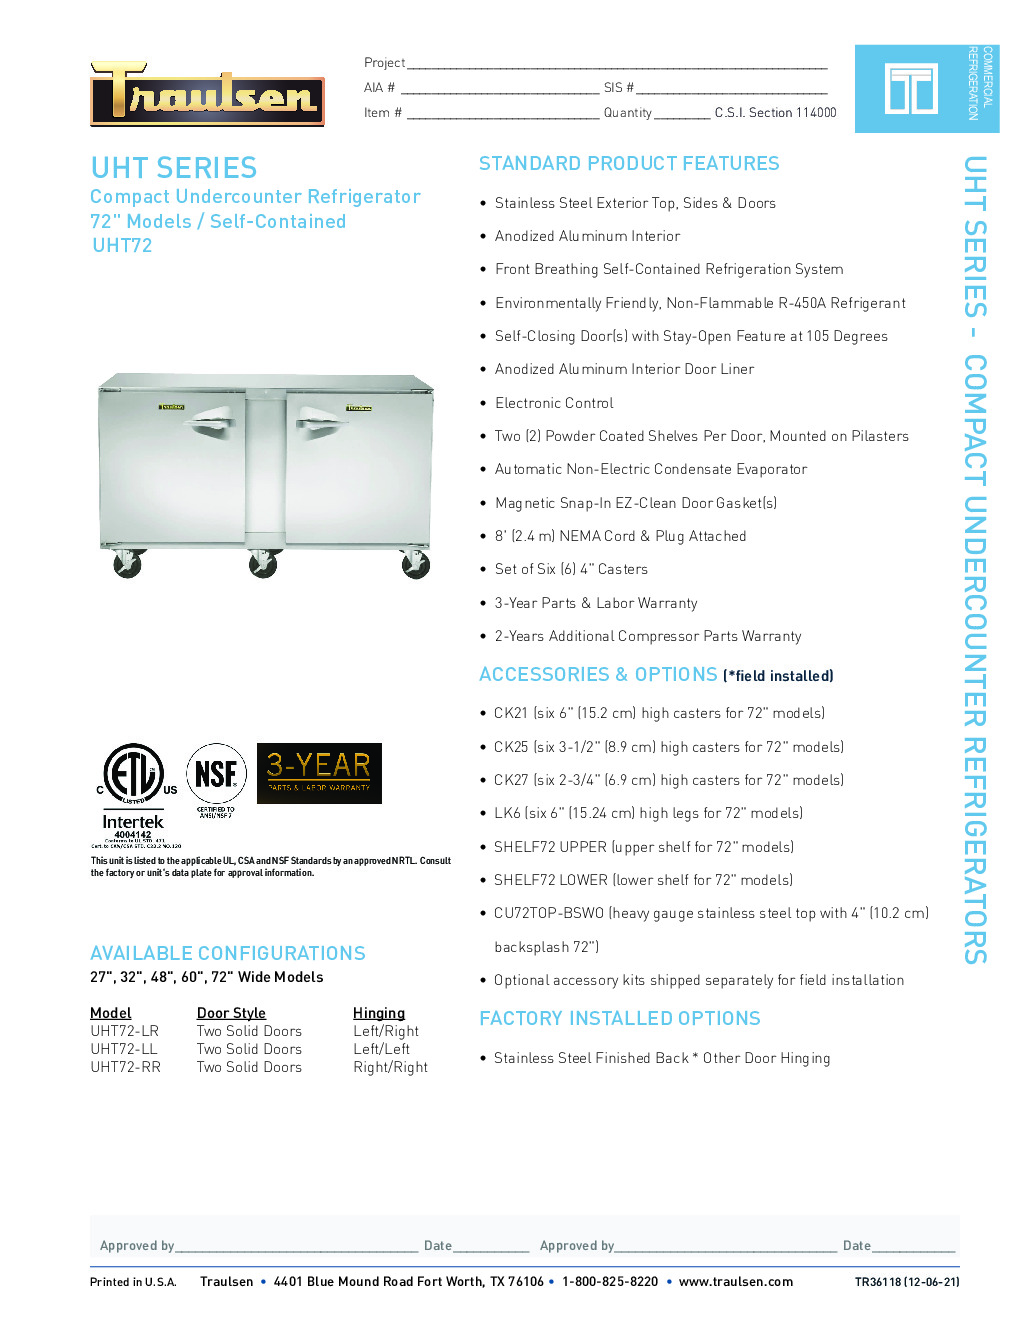 Traulsen UHT72-LL Reach-In Undercounter Refrigerator